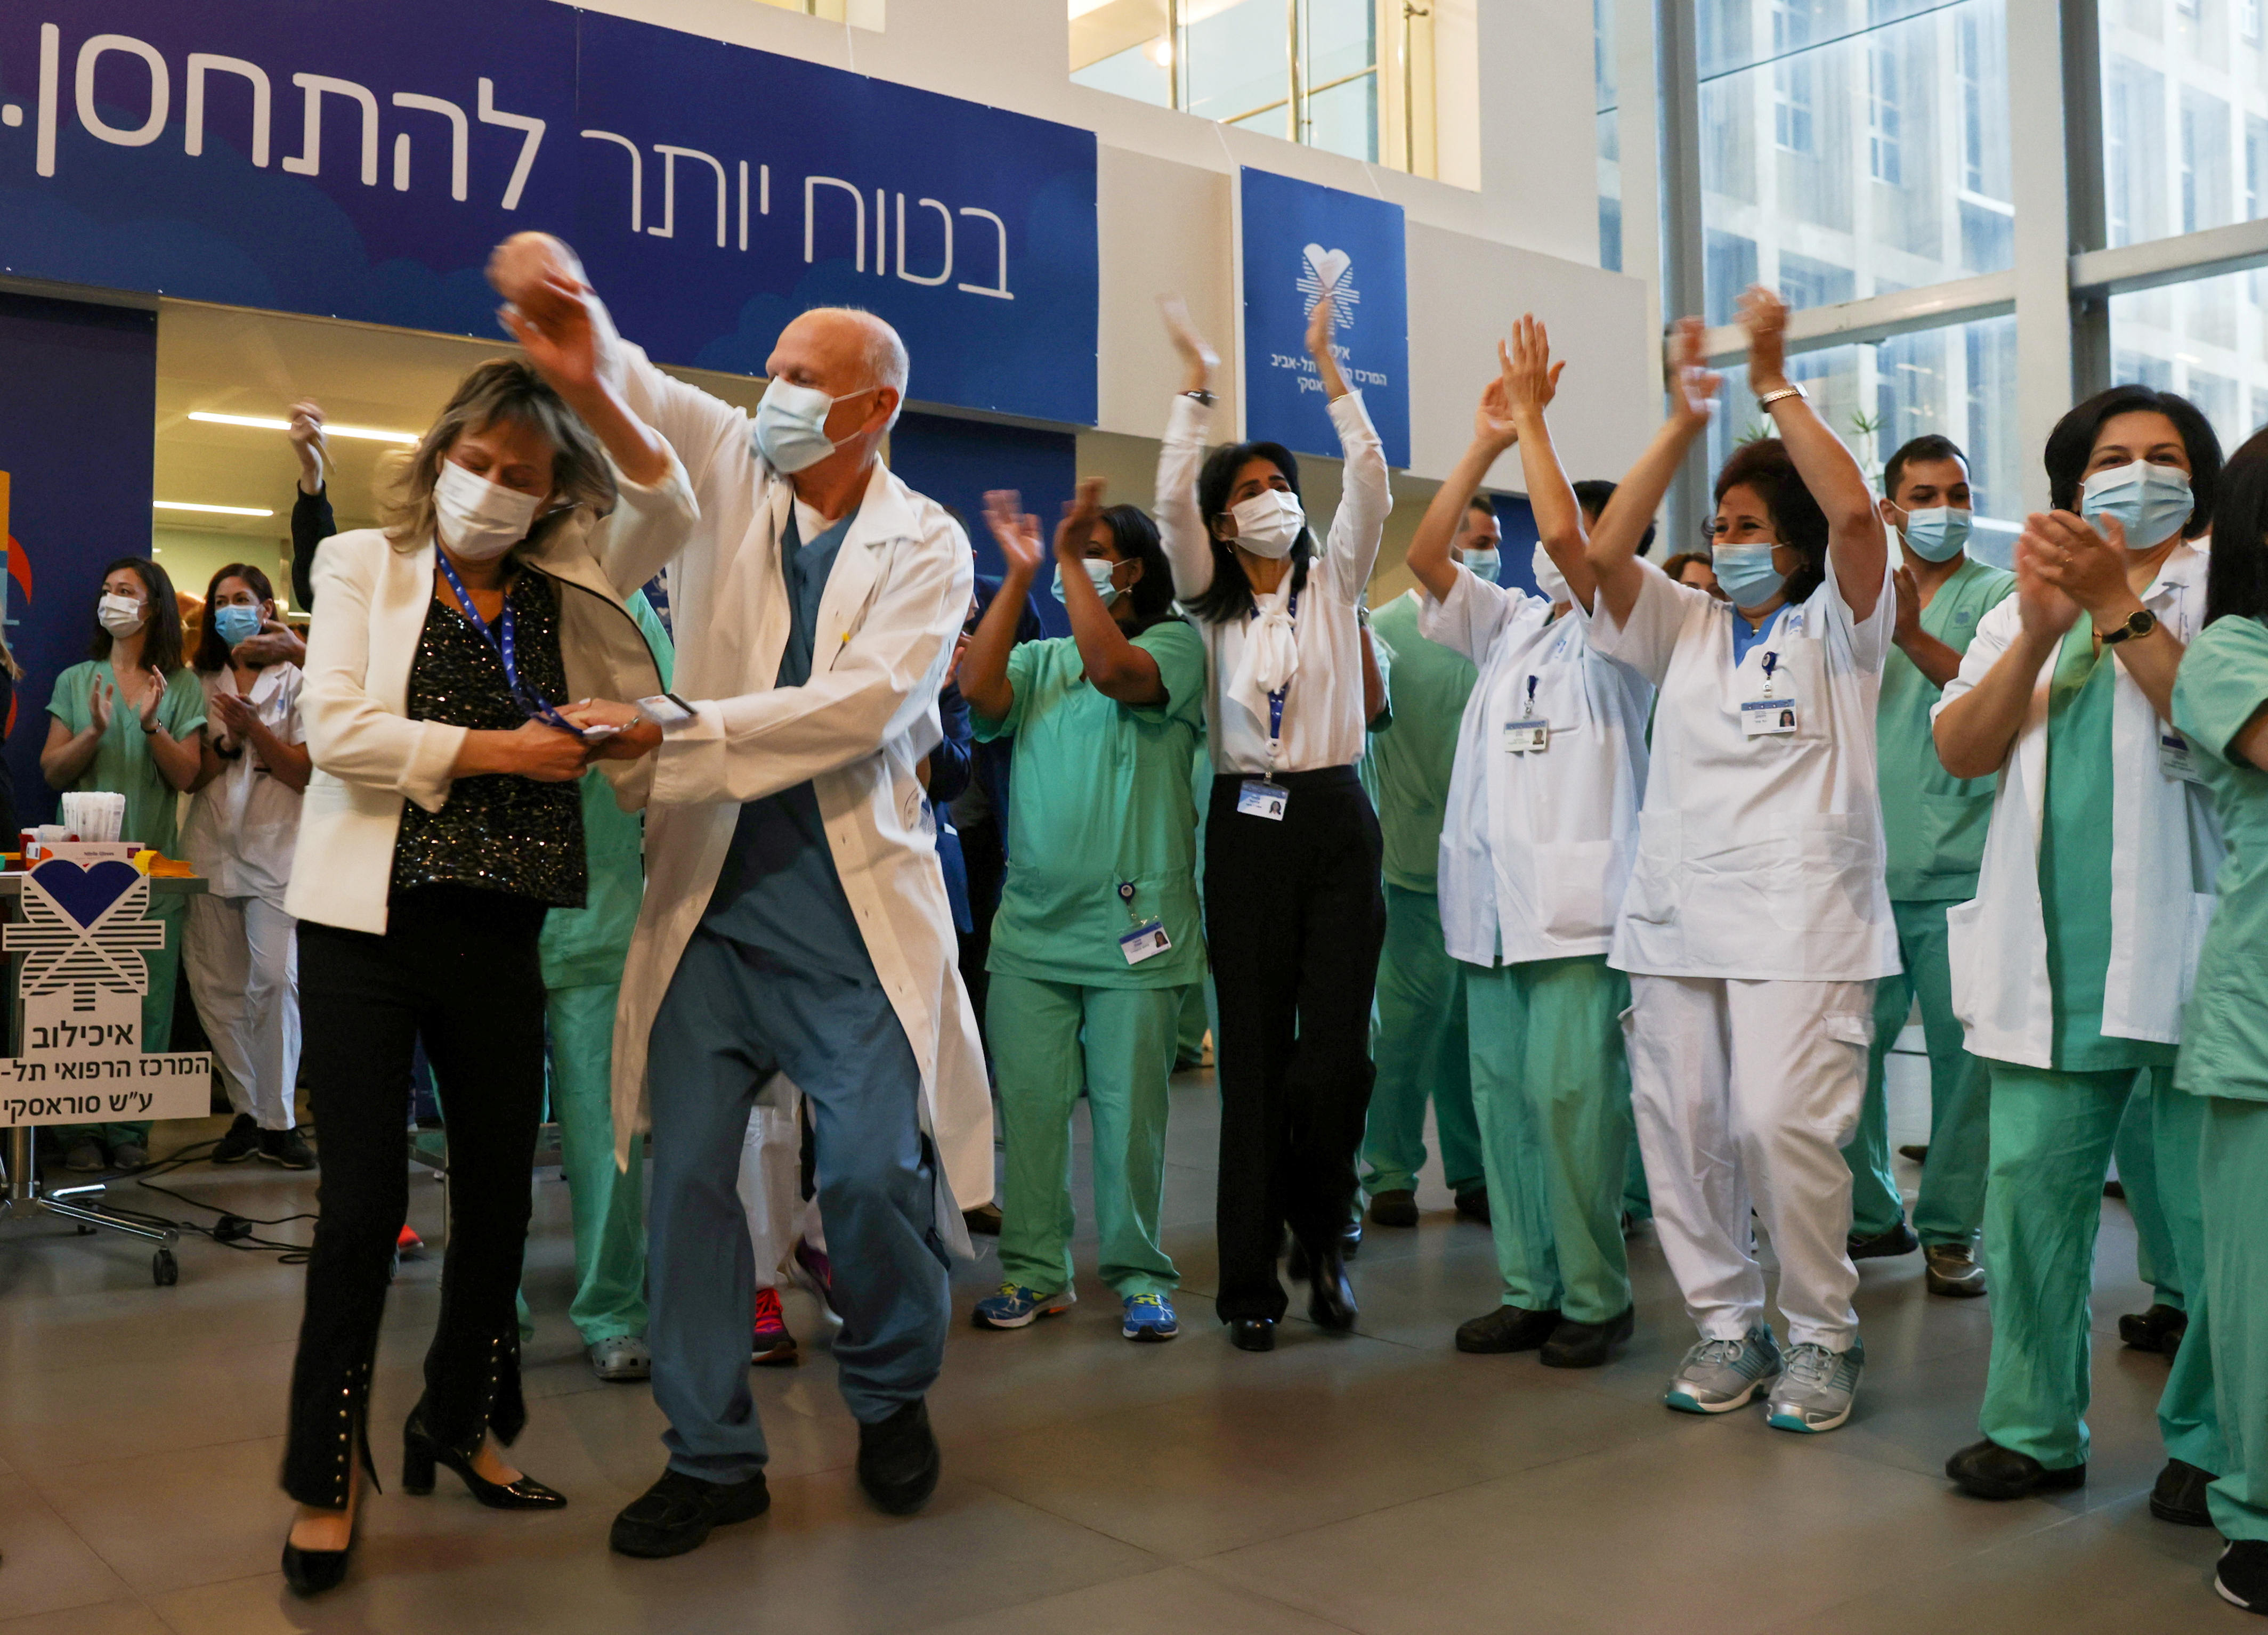 Profesionales de la salud celebran luego de recibir la vacuna contra el COVID-19 en un hospital de Tel Aviv, Israel (REUTERS/Ronen Zvulun)